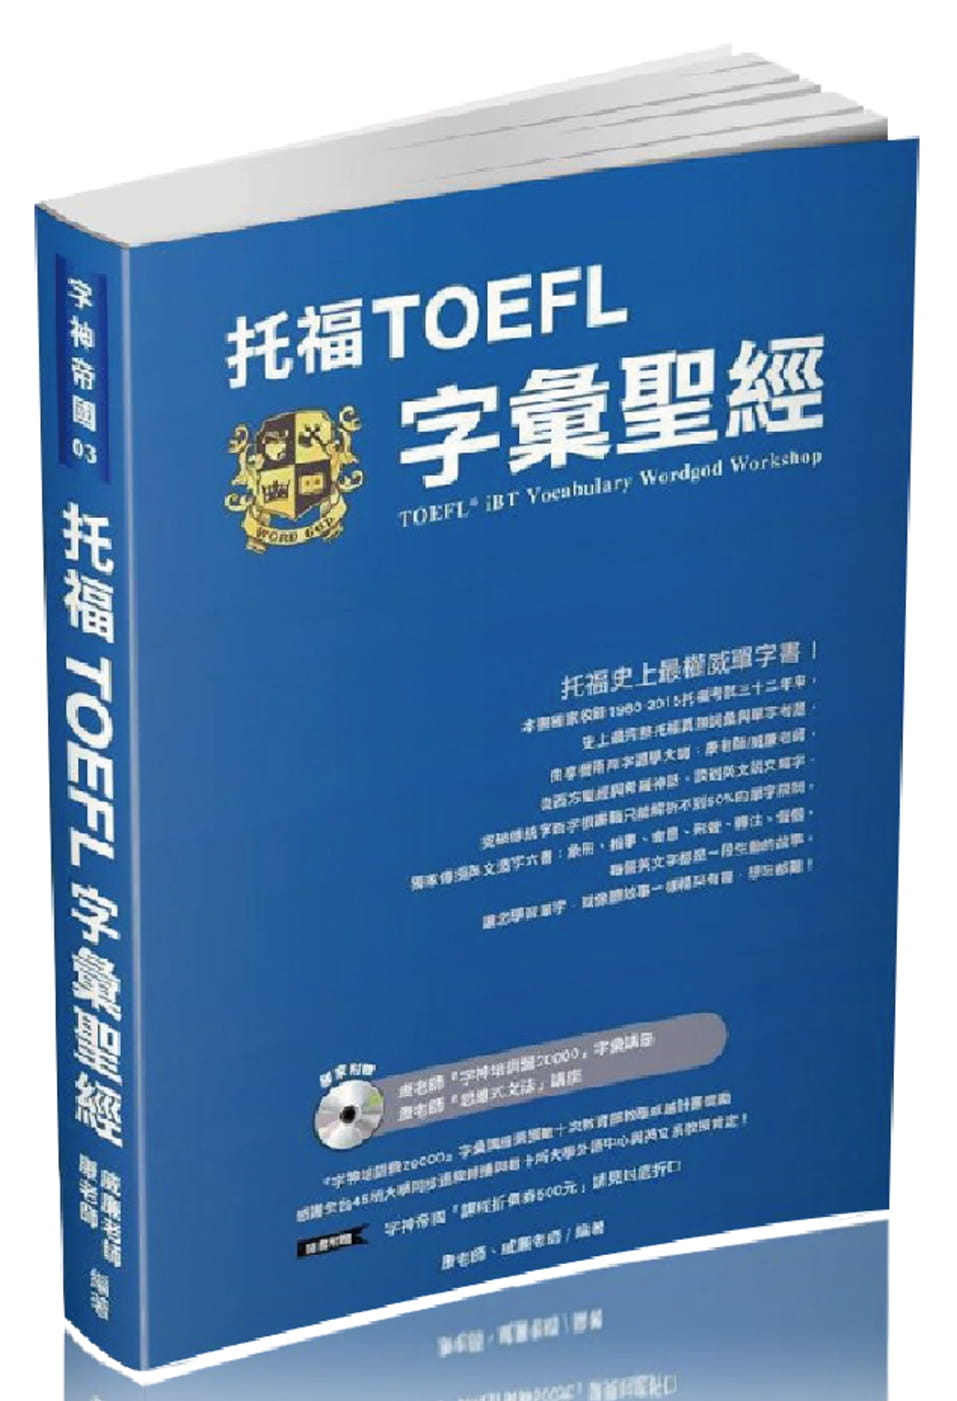 托福TOEFL字彙聖經